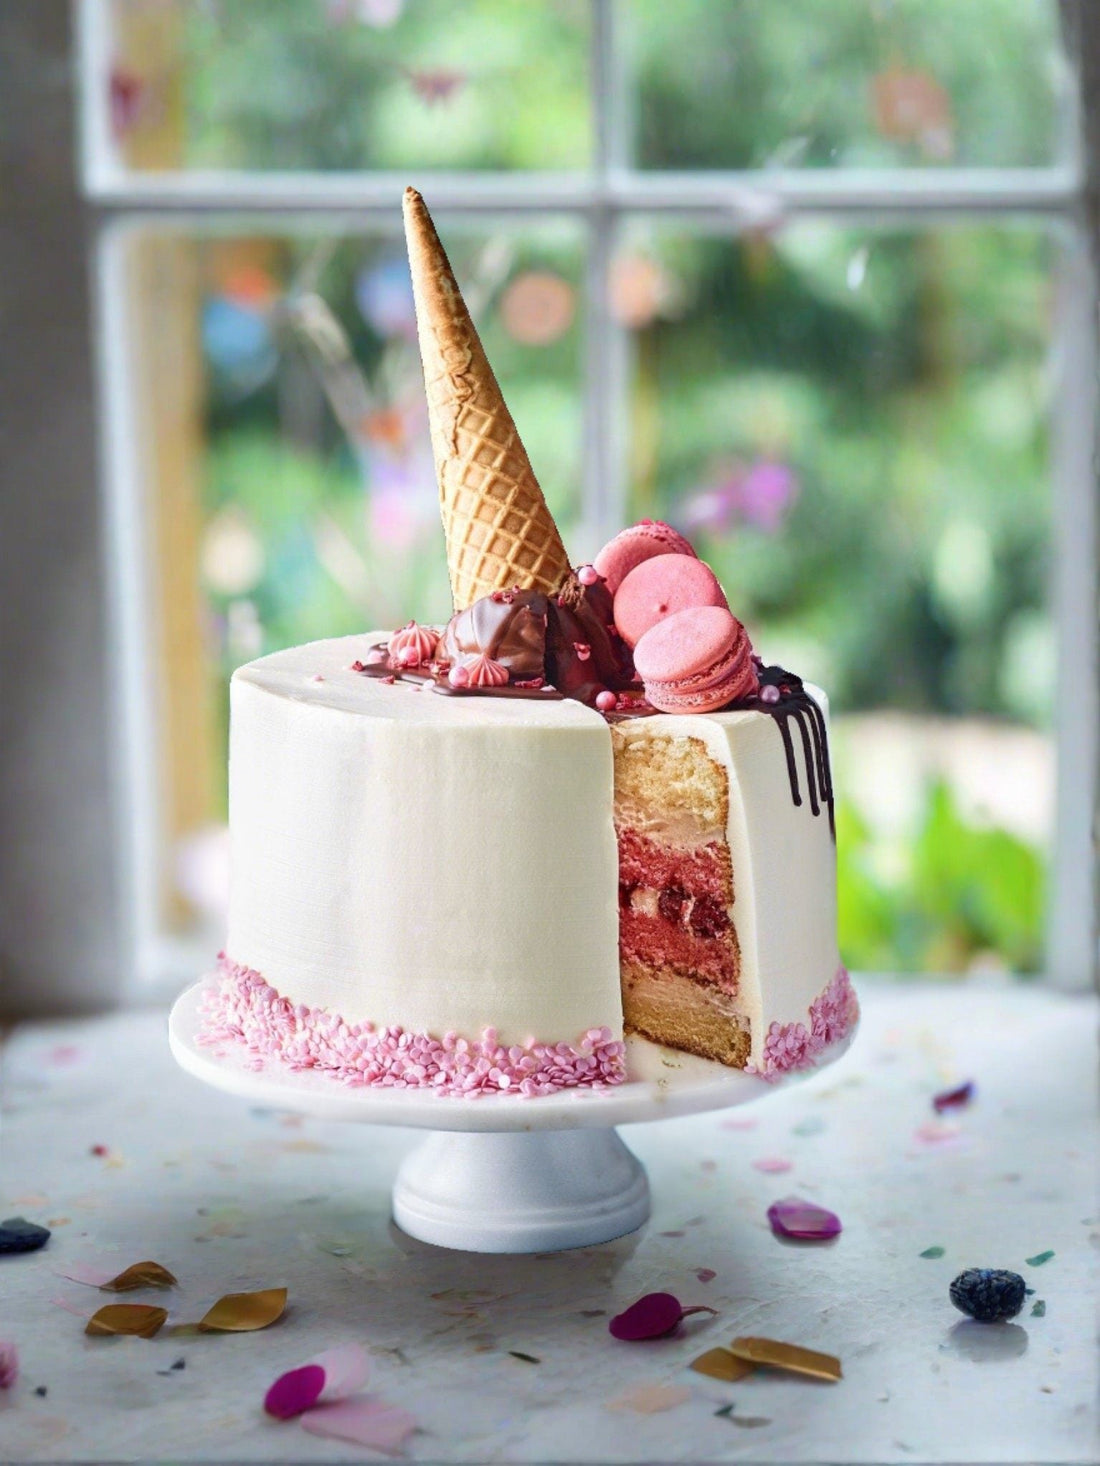 The Perfect Ice Cream Birthday Cake - Patisserie Valerie